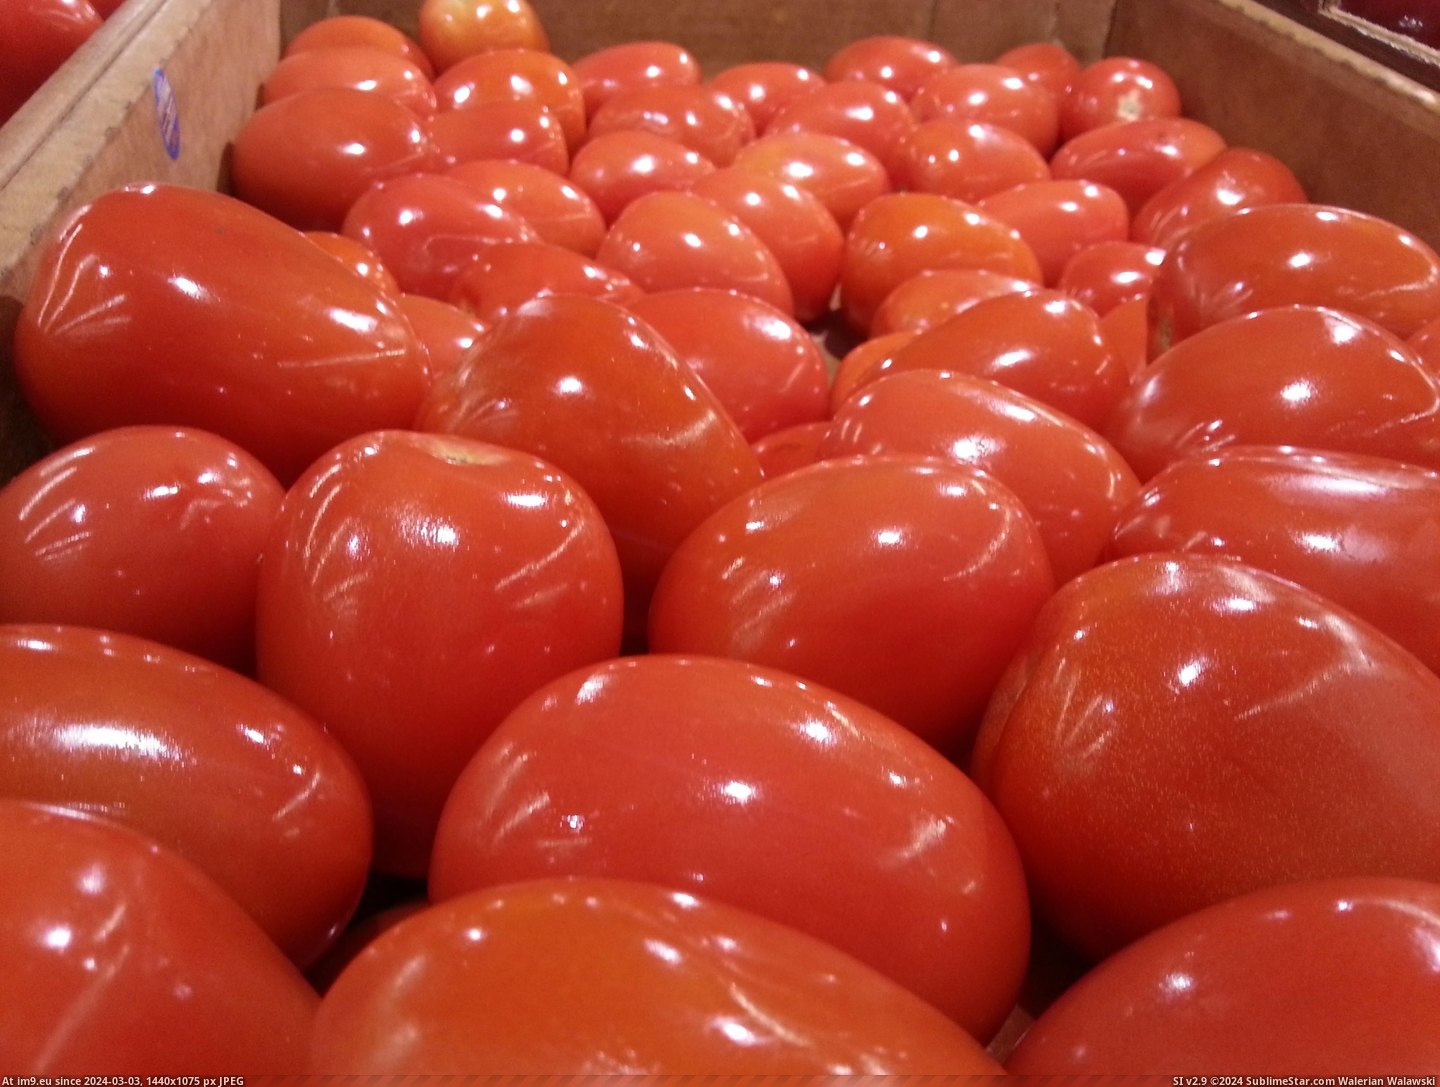 #Are #Tomatoes #Shiny [Mildlyinteresting] The tomatoes are especially shiny today. Pic. (Obraz z album My r/MILDLYINTERESTING favs))